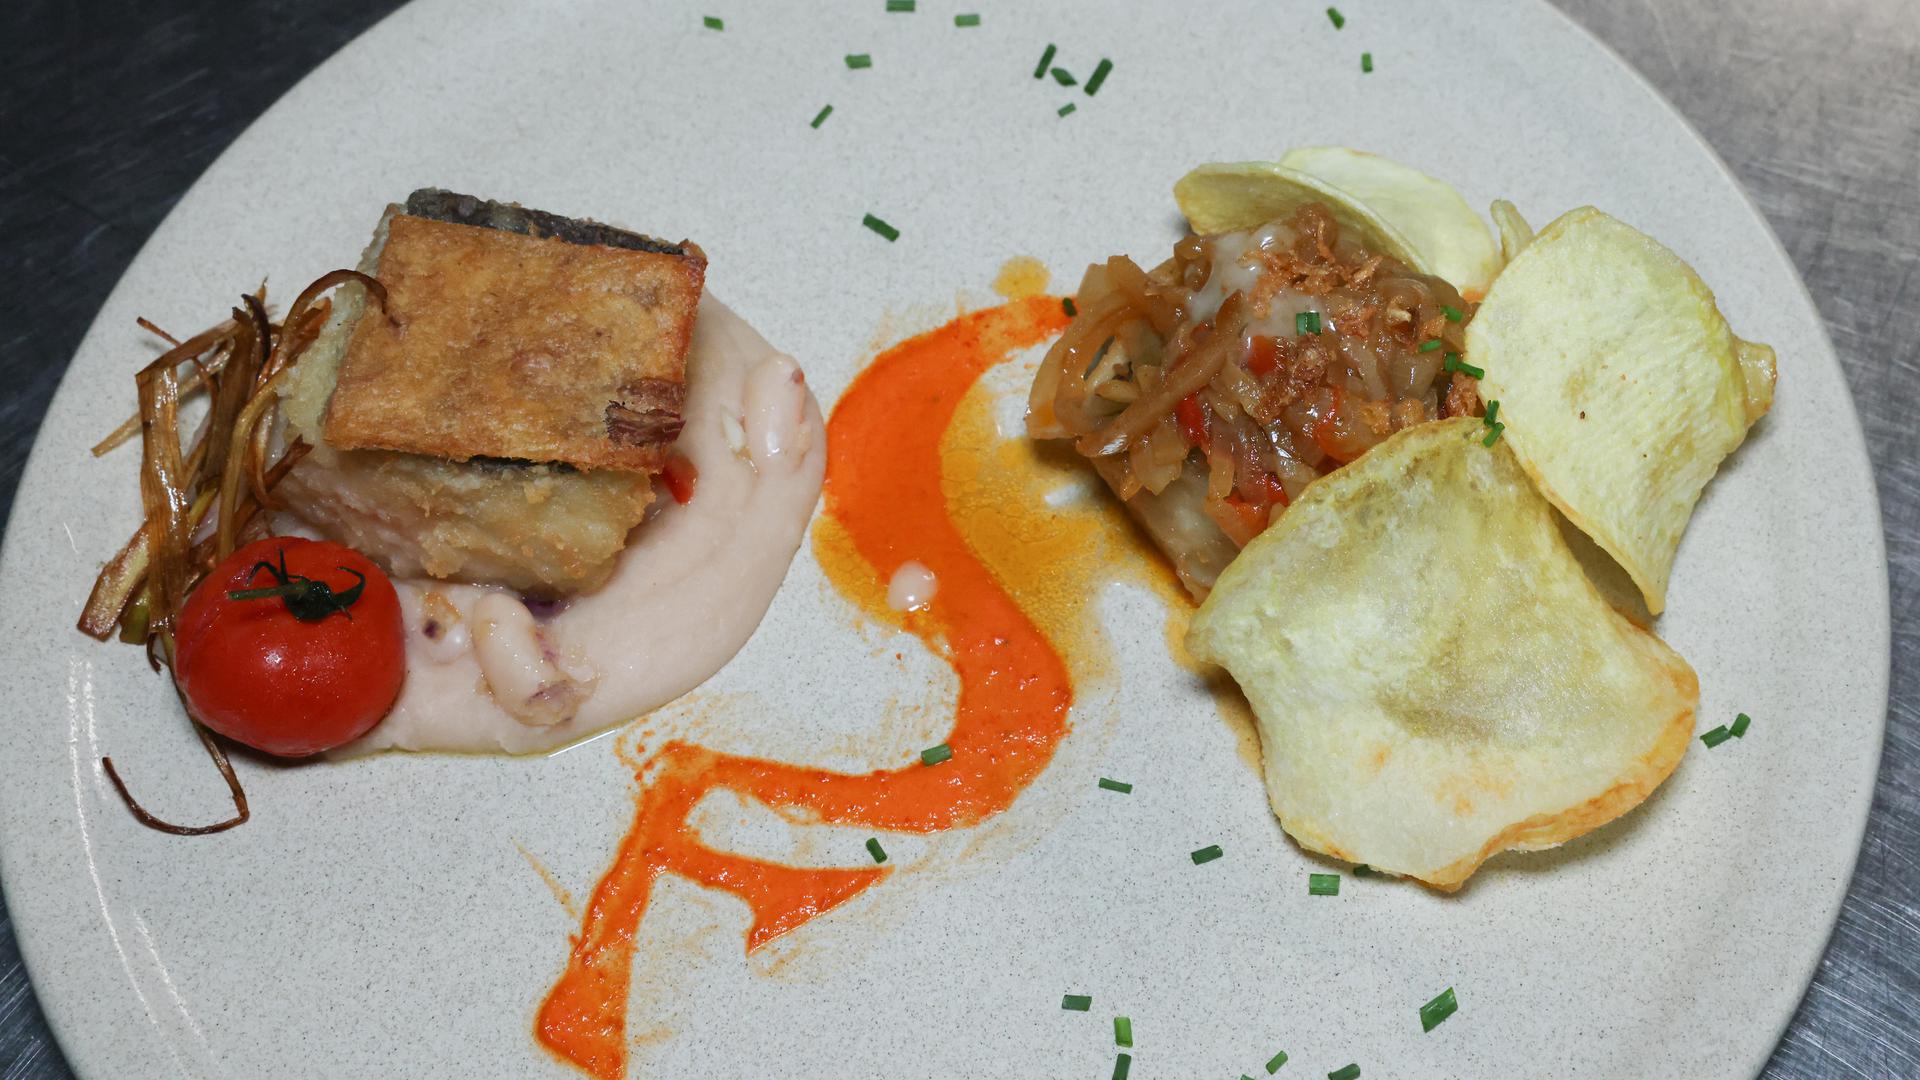 À esquerda, o bacalhau com crosta de alheira e puré de feijão branco. À direita, o bacalhau à merceeiro. Inovações para um prato de tradição.